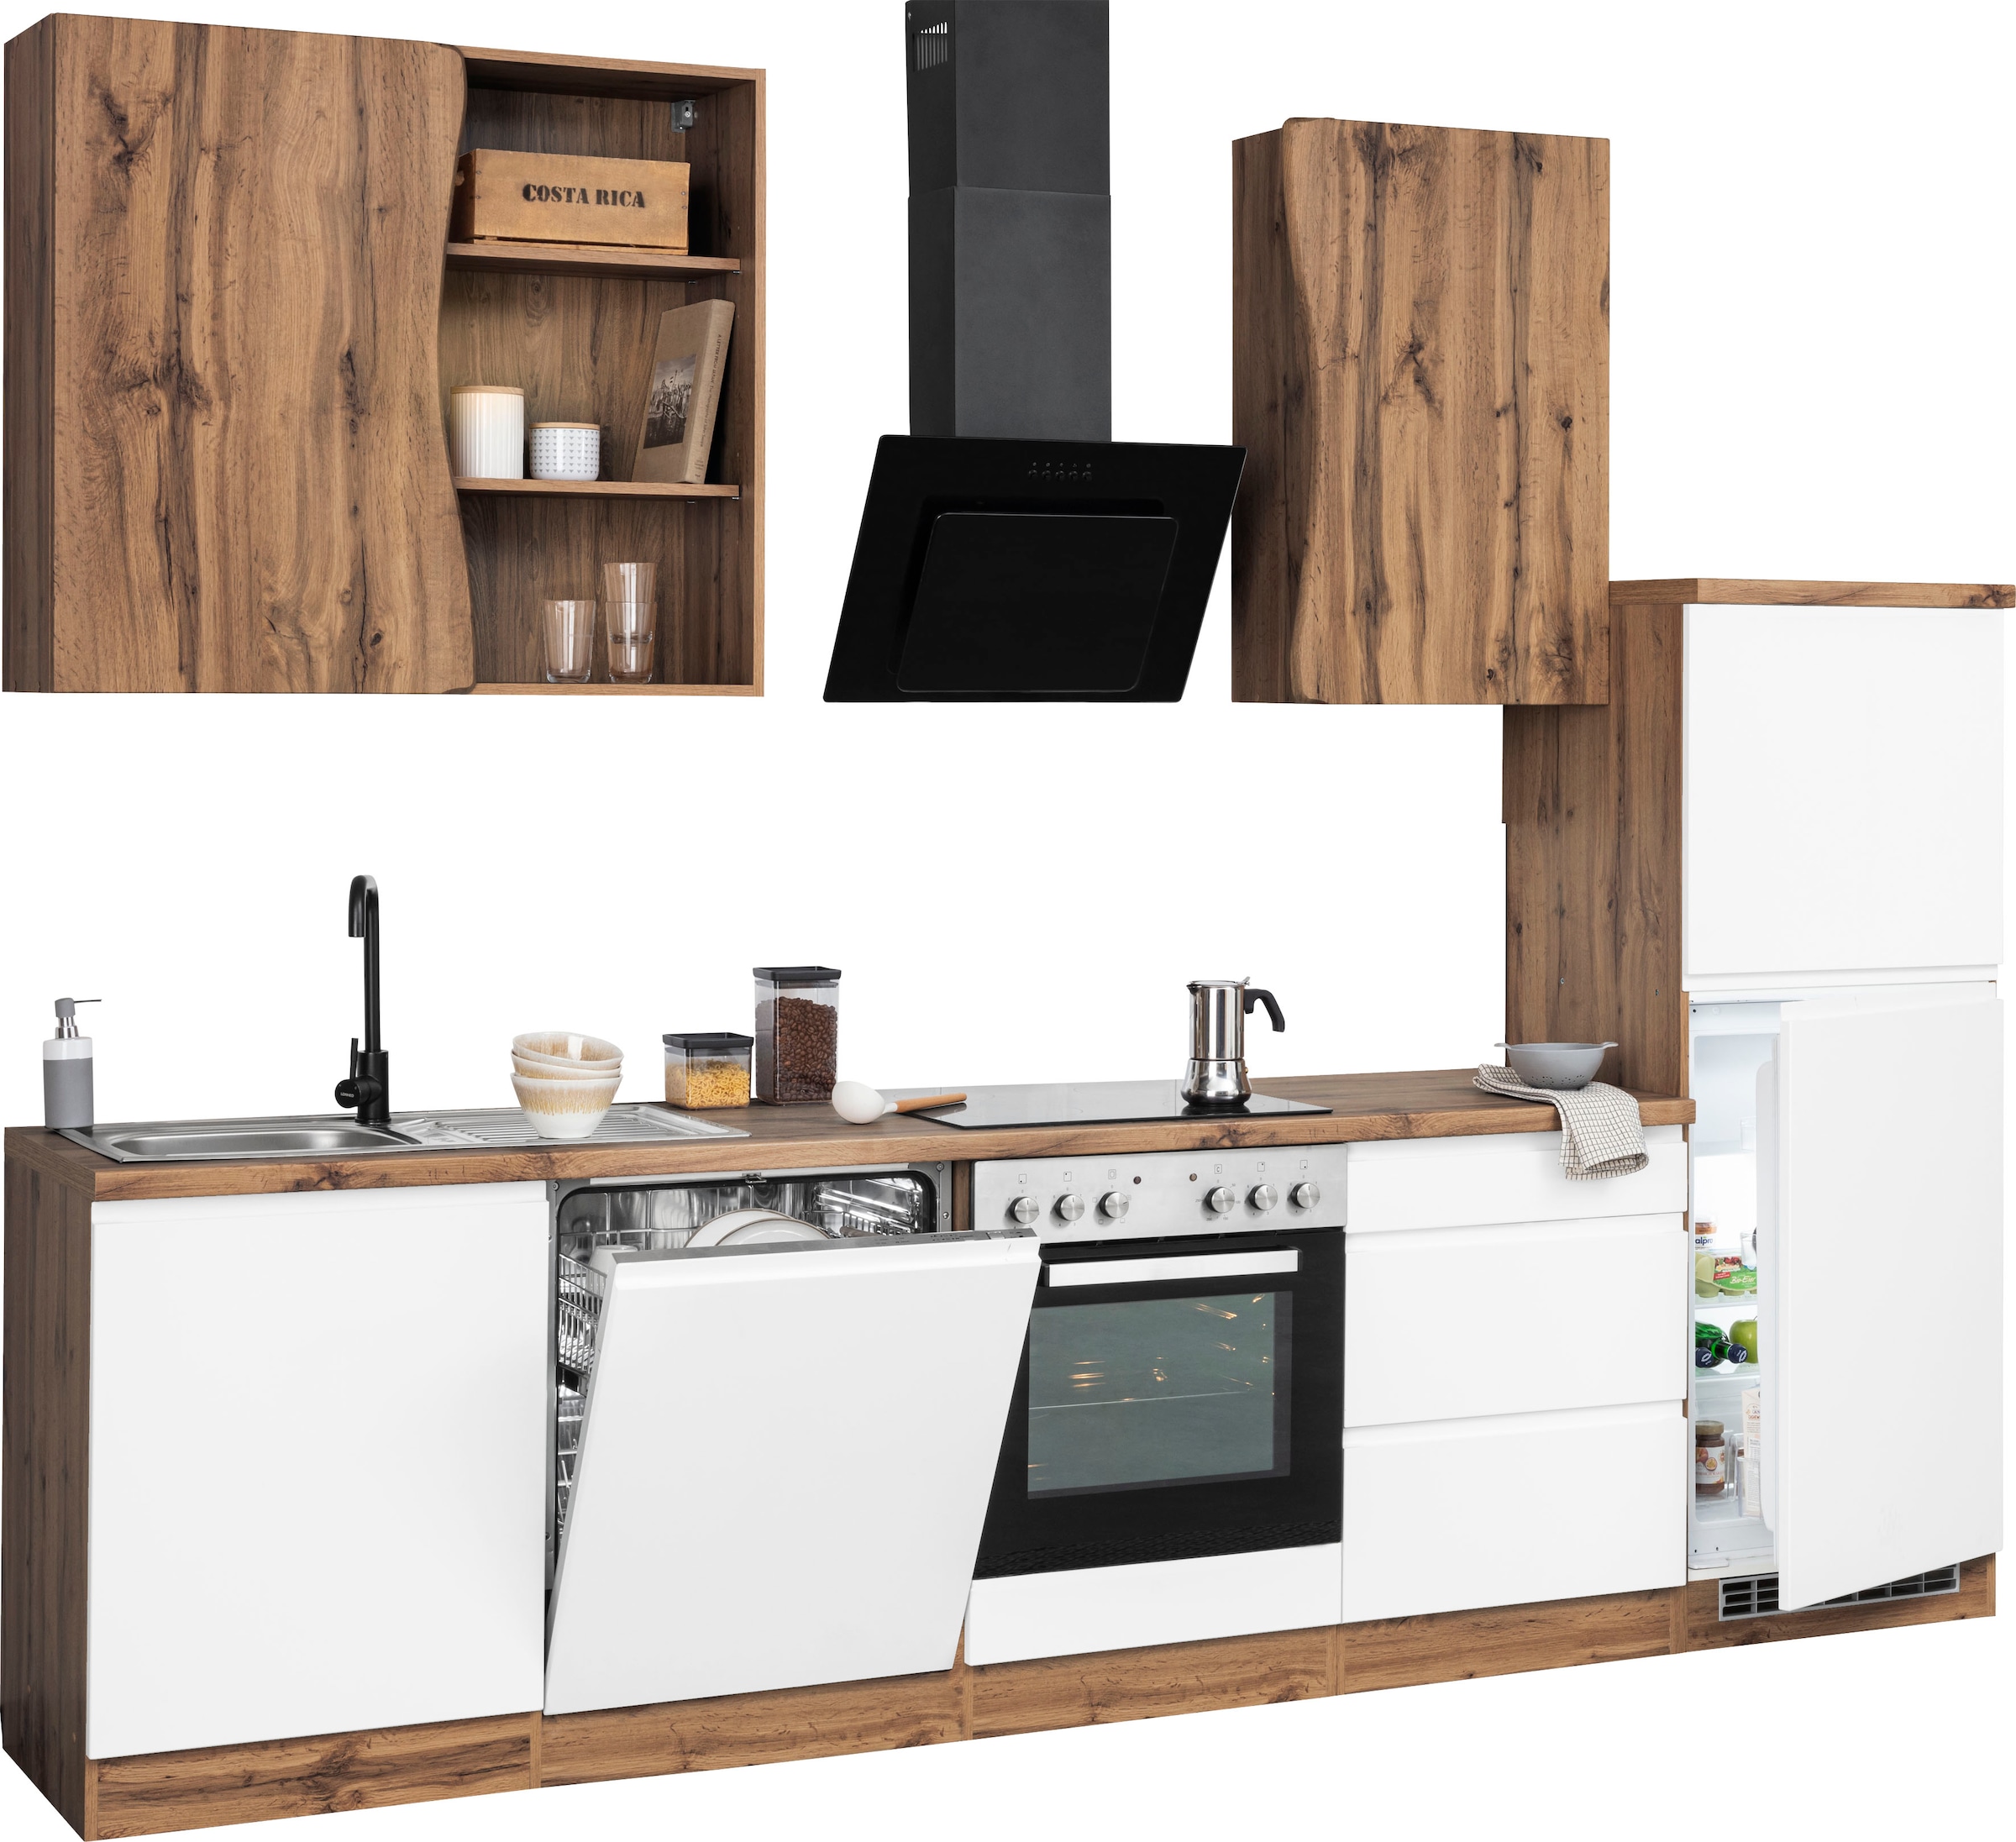 HELD MÖBEL Küche »Bruneck«, 300cm breit, auf MDF-Fronten hochwertige ohne E-Geräte, kaufen oder wahlweise Rechnung mit